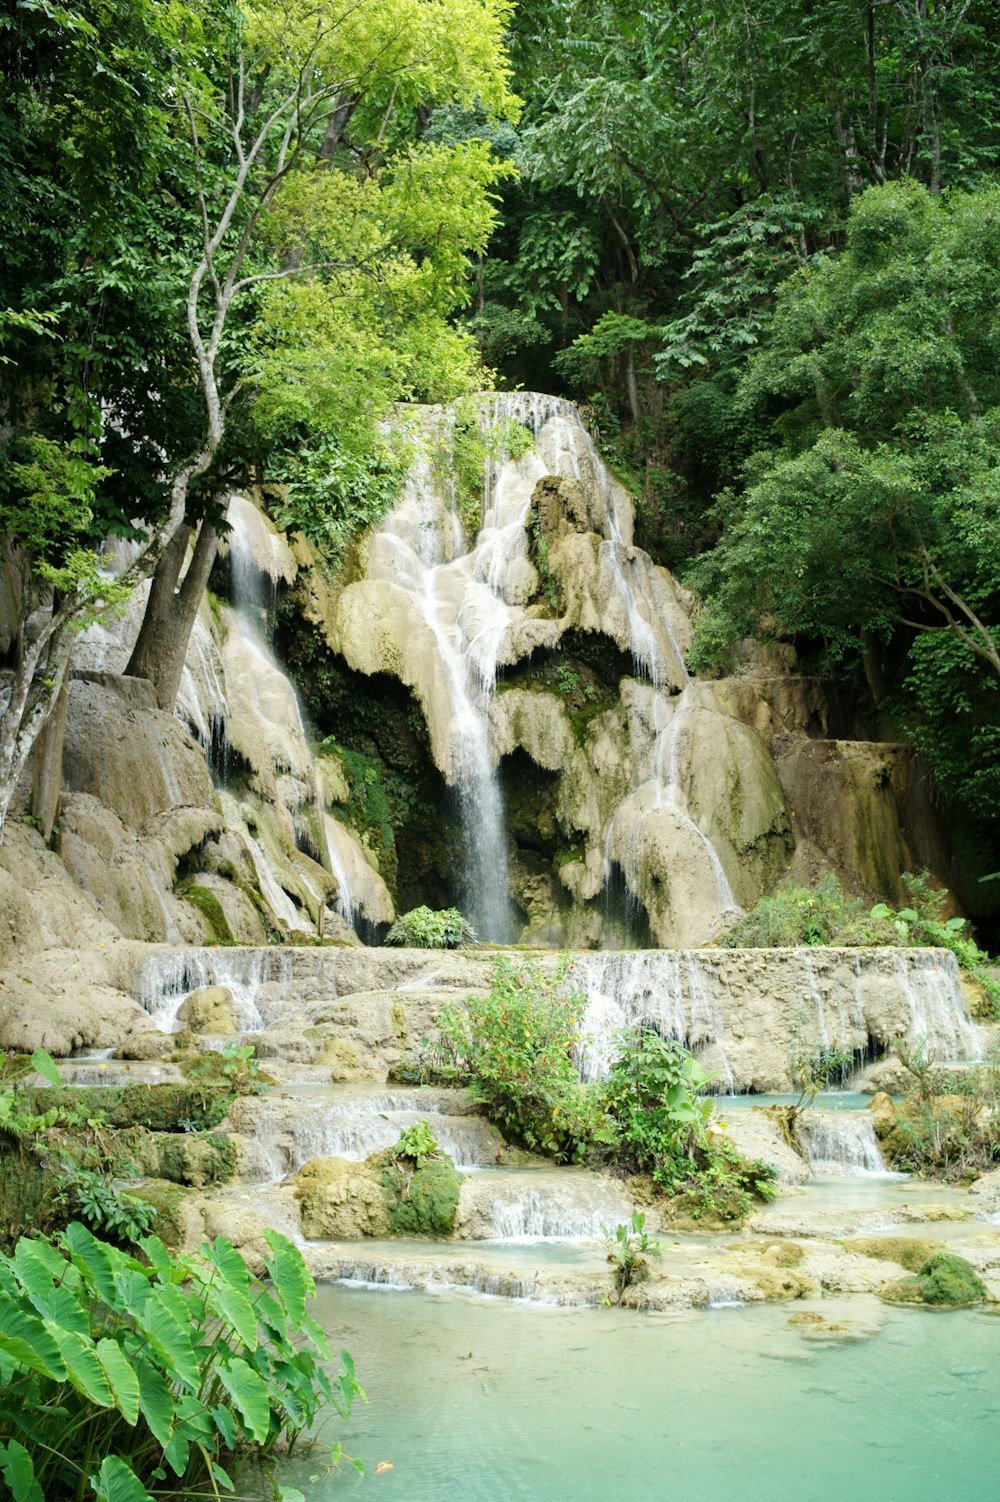 Wasserfälle, die tagsüber von grünen Bäumen umgeben sind